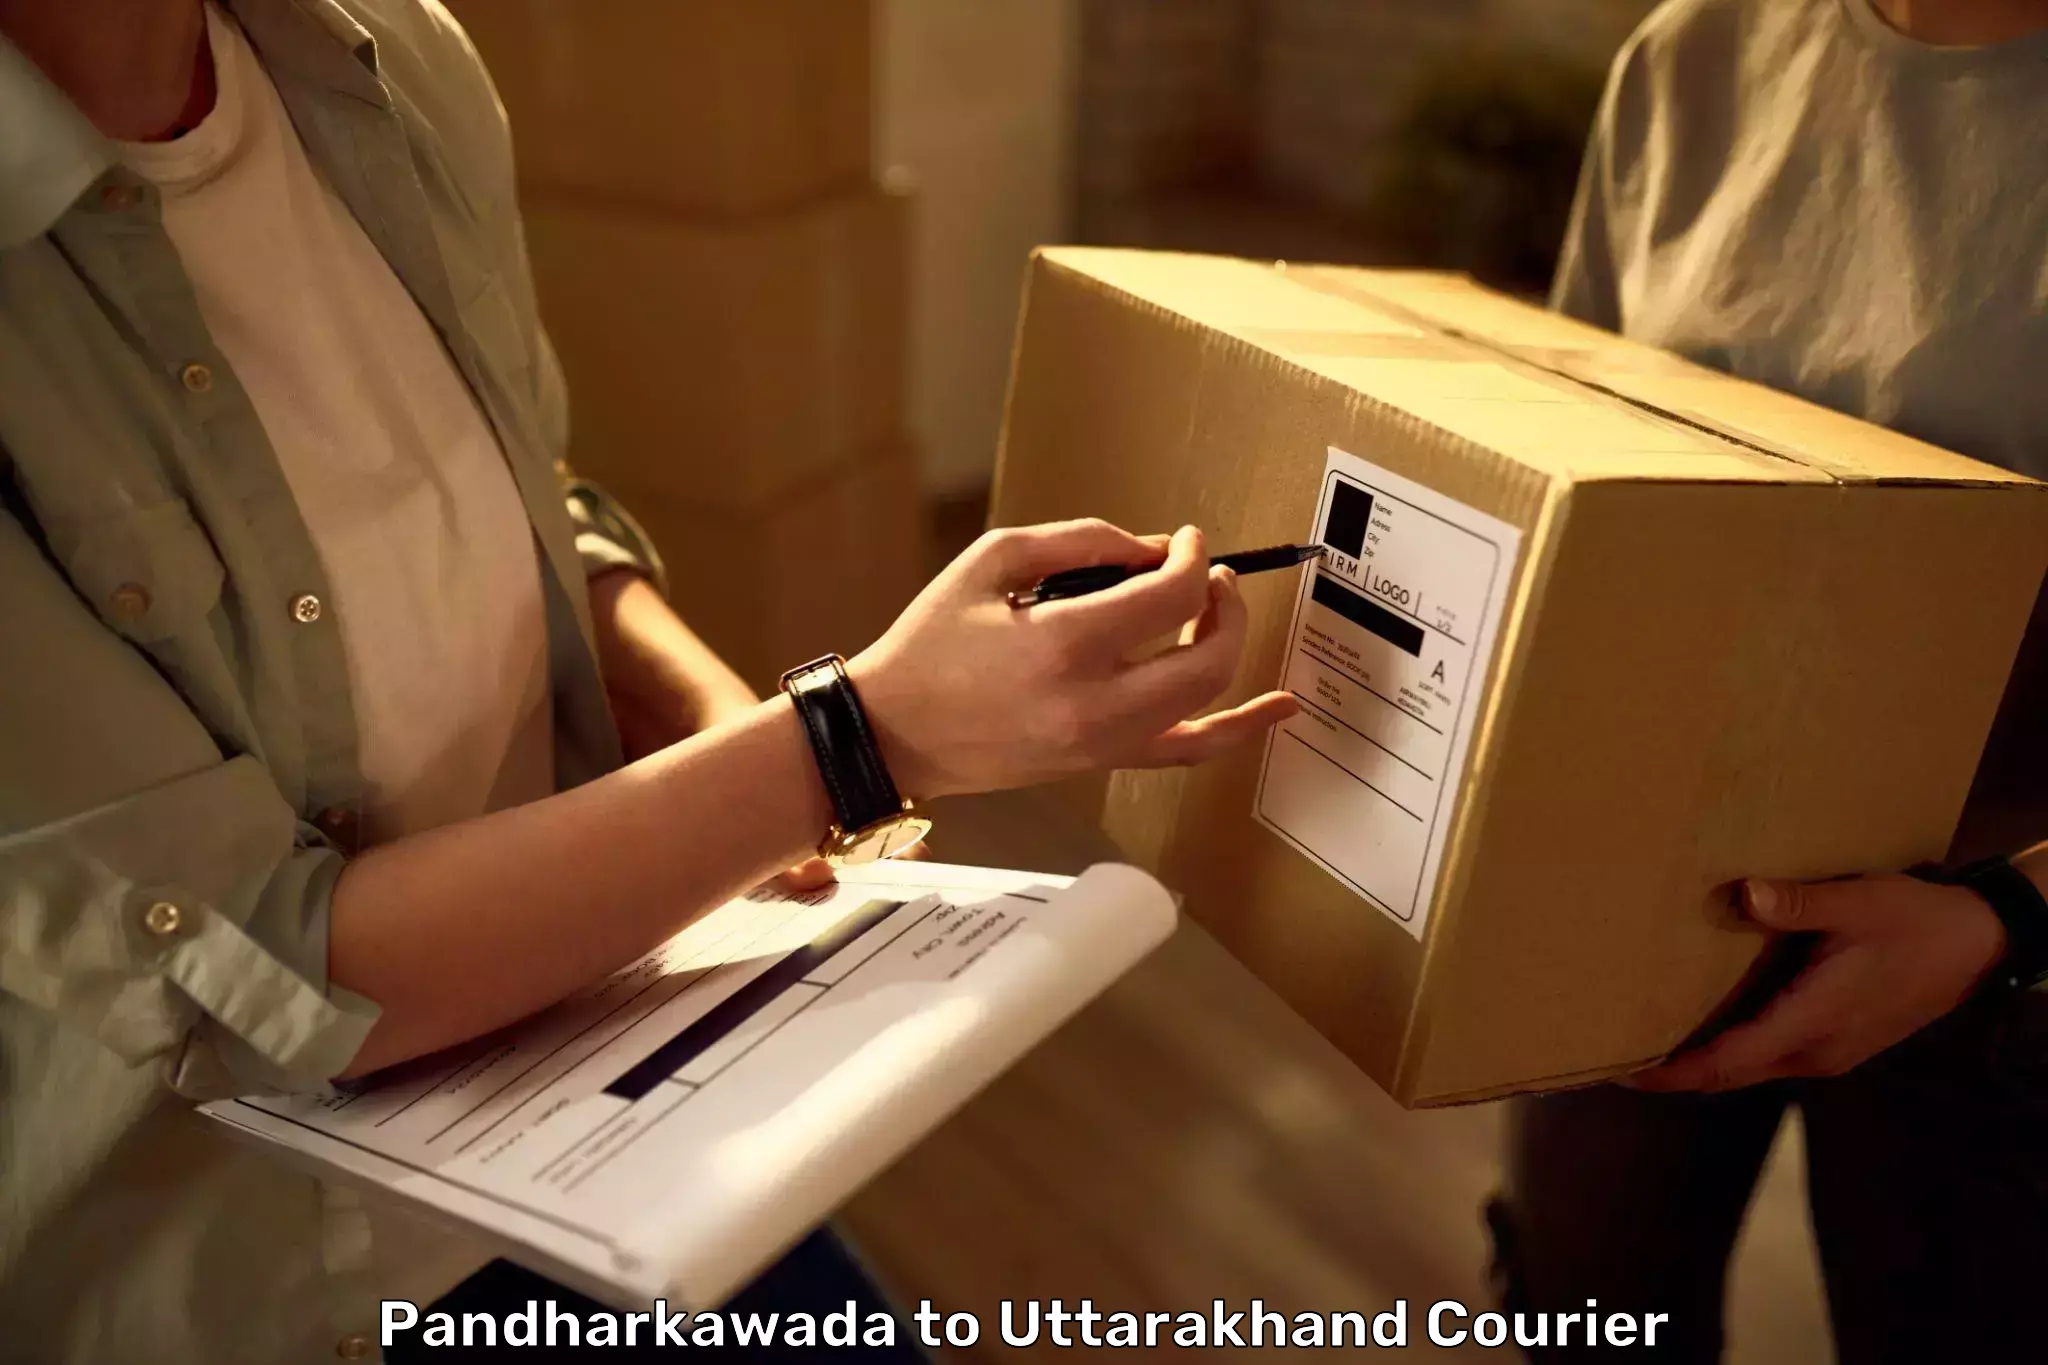 Luggage transfer service Pandharkawada to Uttarakhand